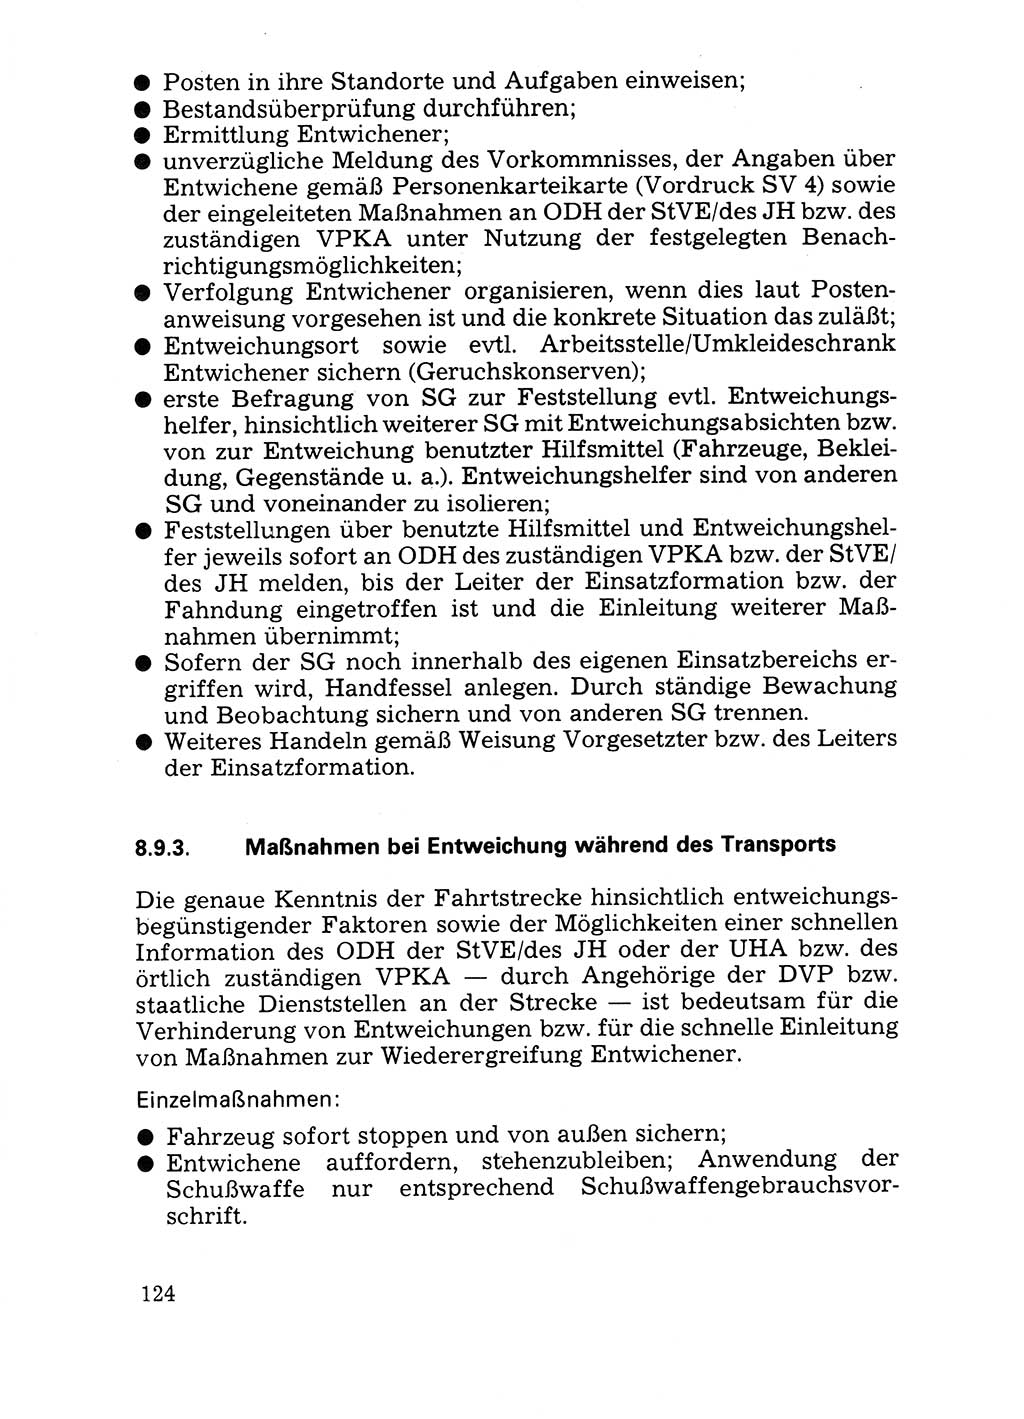 Handbuch für operative Dienste, Abteilung Strafvollzug (SV) [Ministerium des Innern (MdI) Deutsche Demokratische Republik (DDR)] 1981, Seite 124 (Hb. op. D. Abt. SV MdI DDR 1981, S. 124)